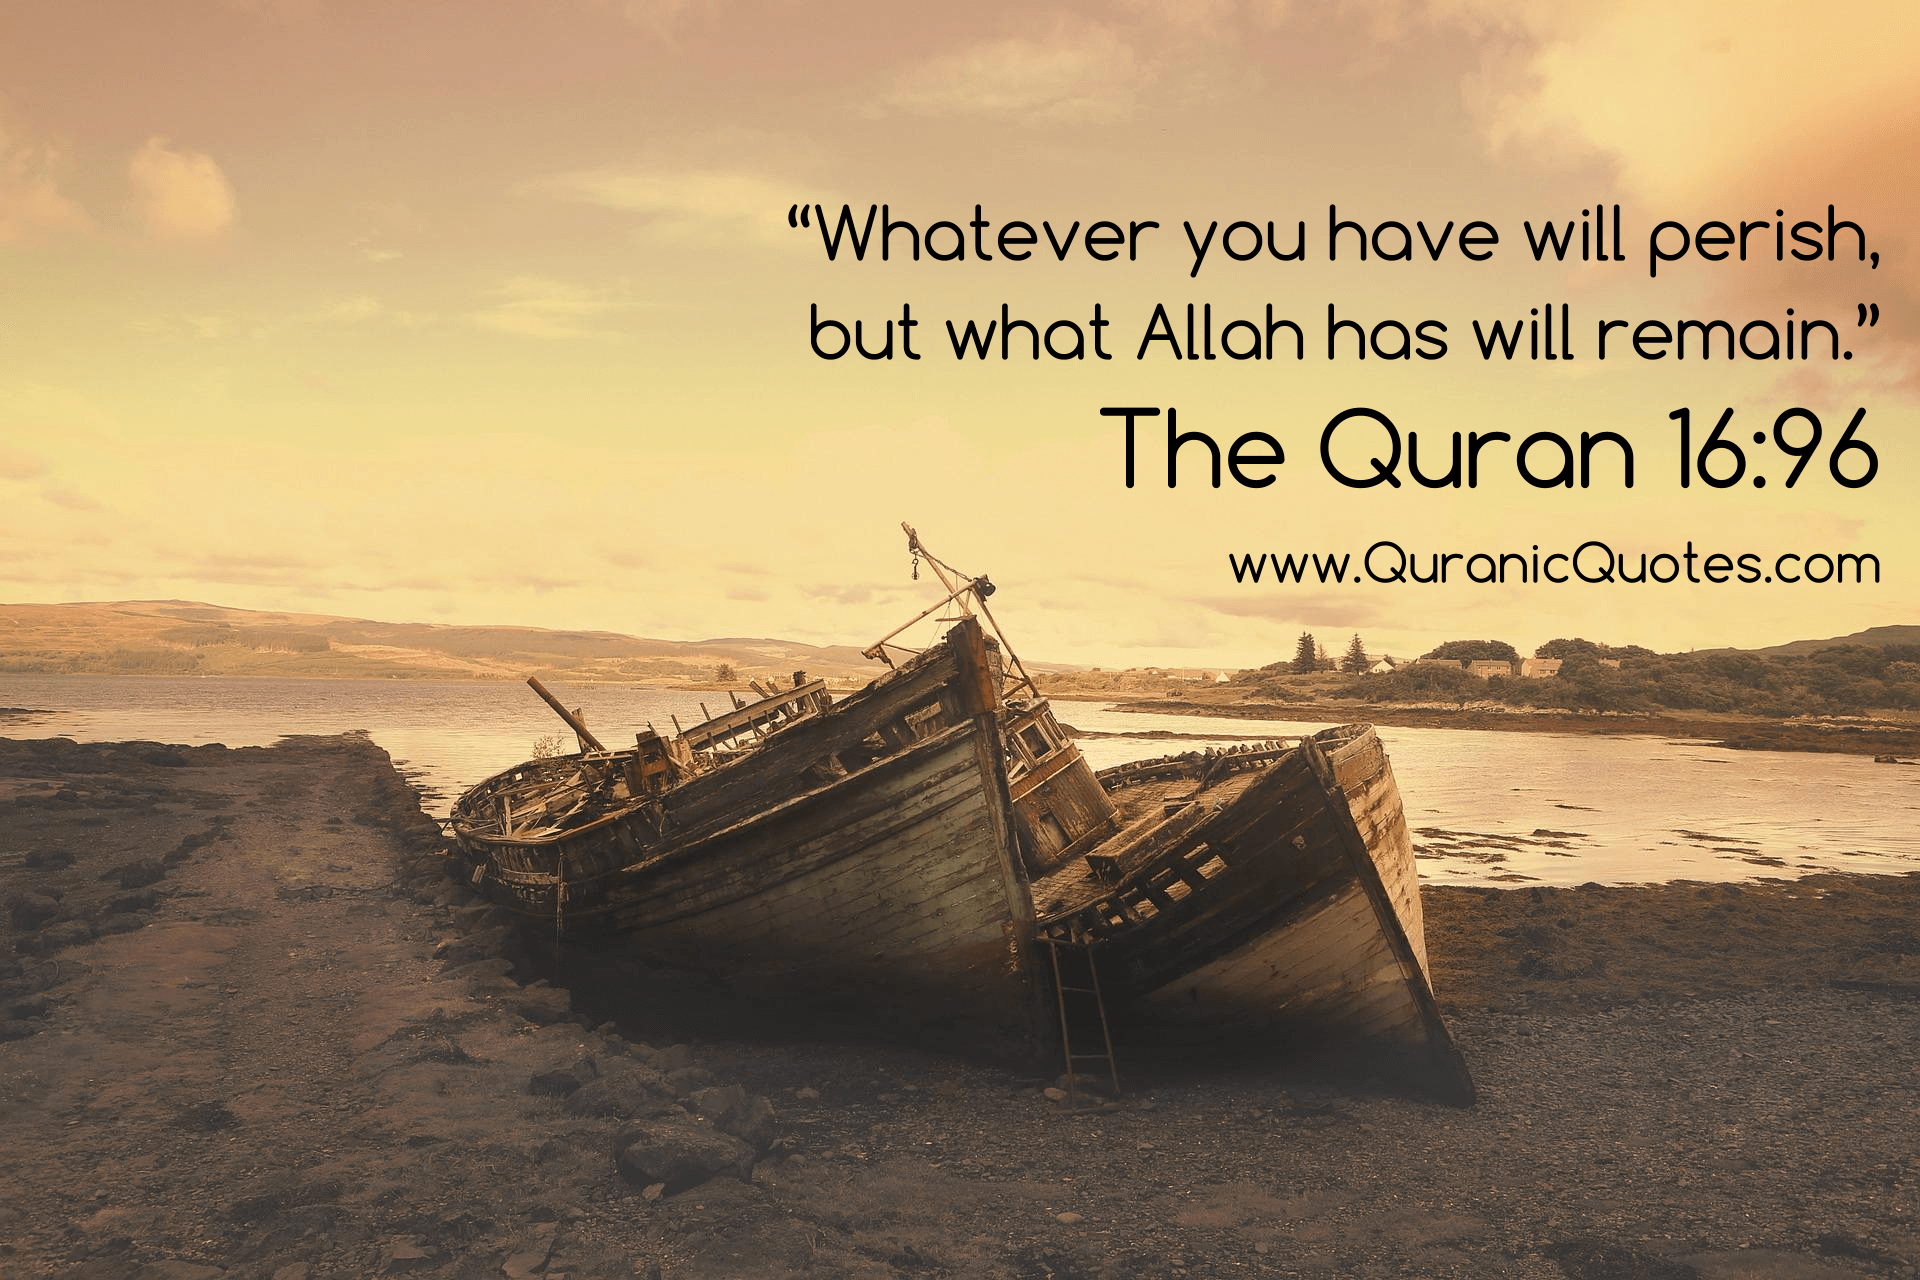 Quranic Quotes #162